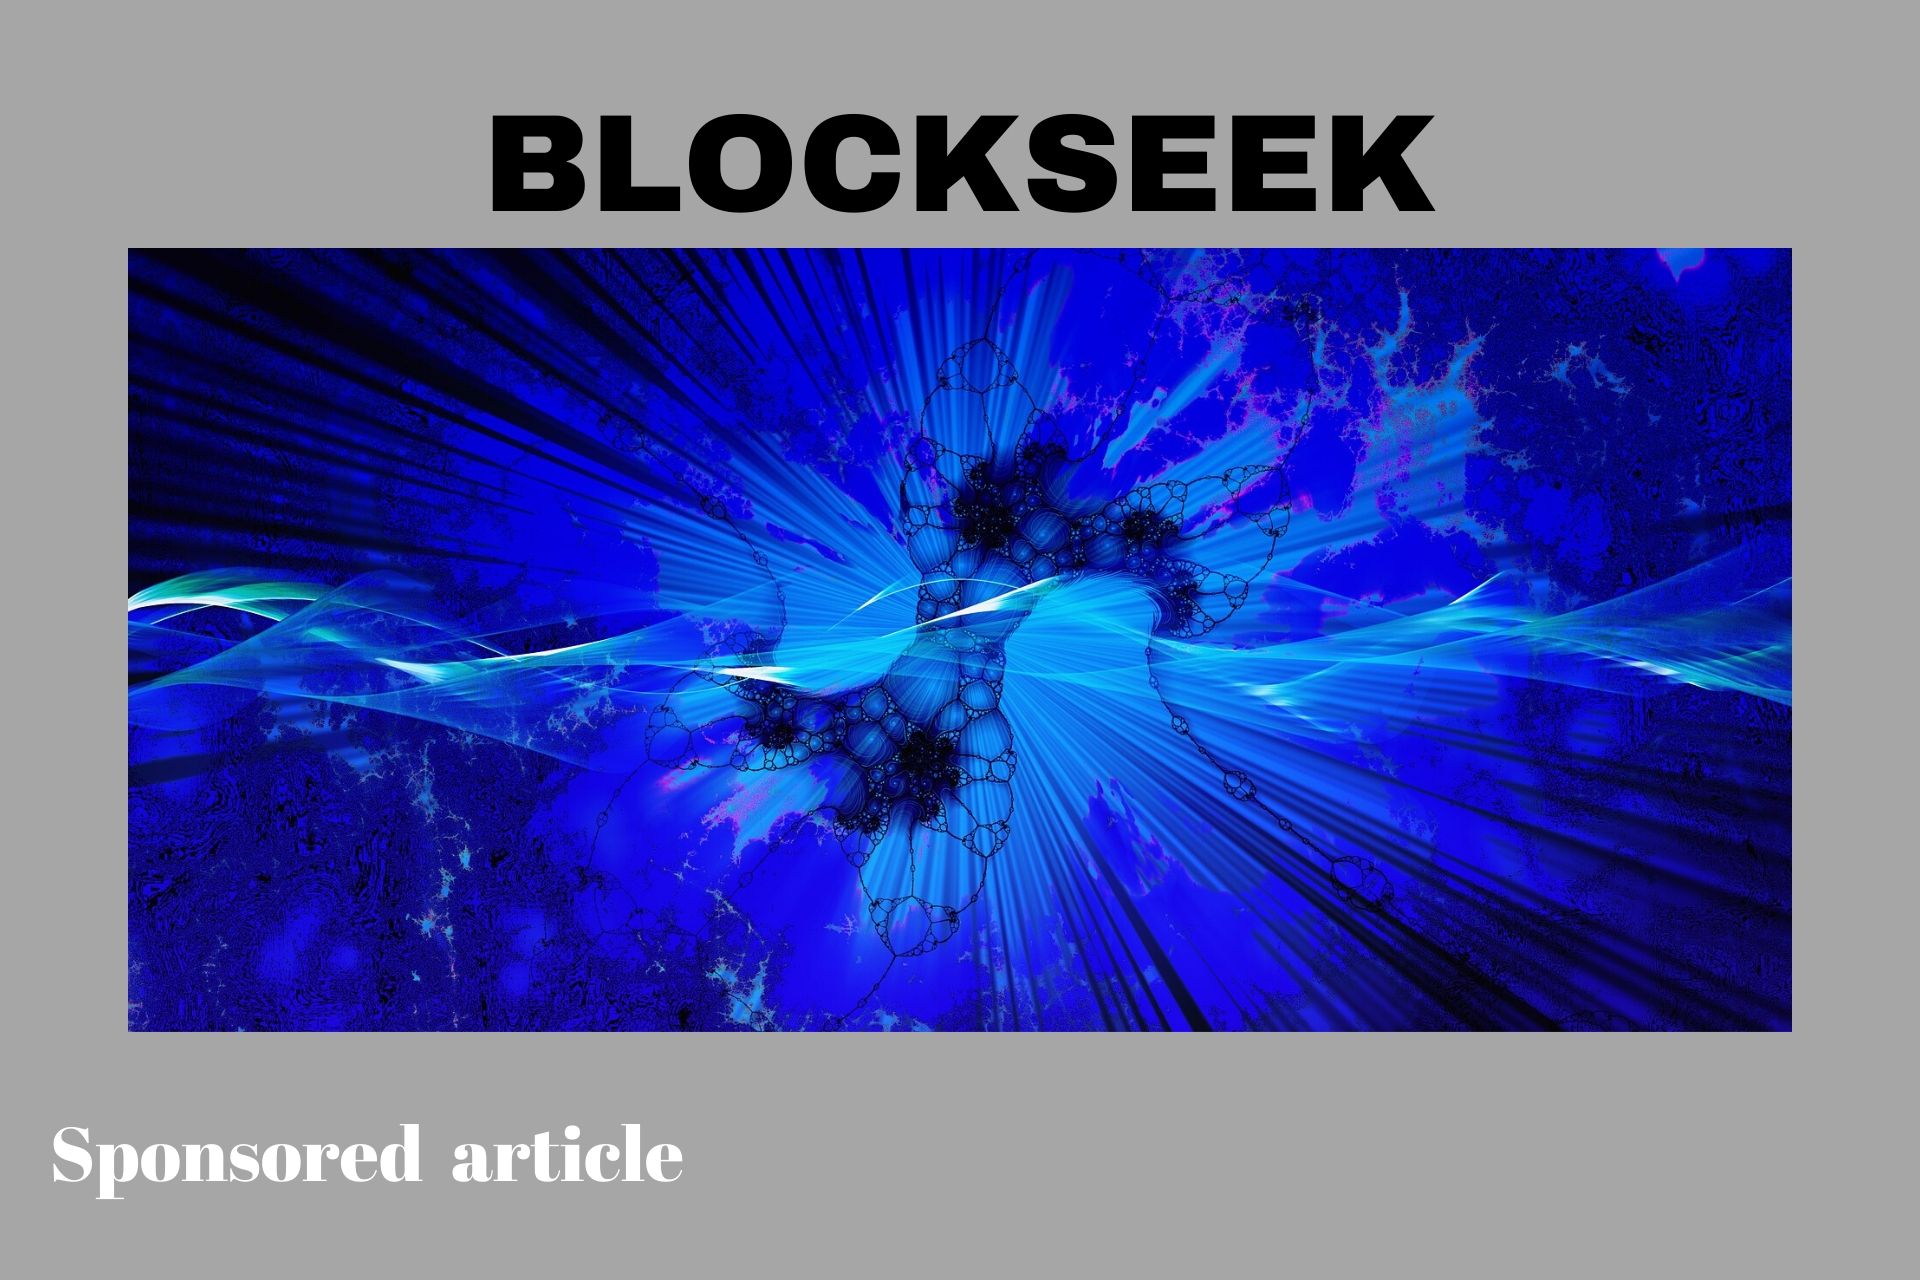 Blockseek hosting platform